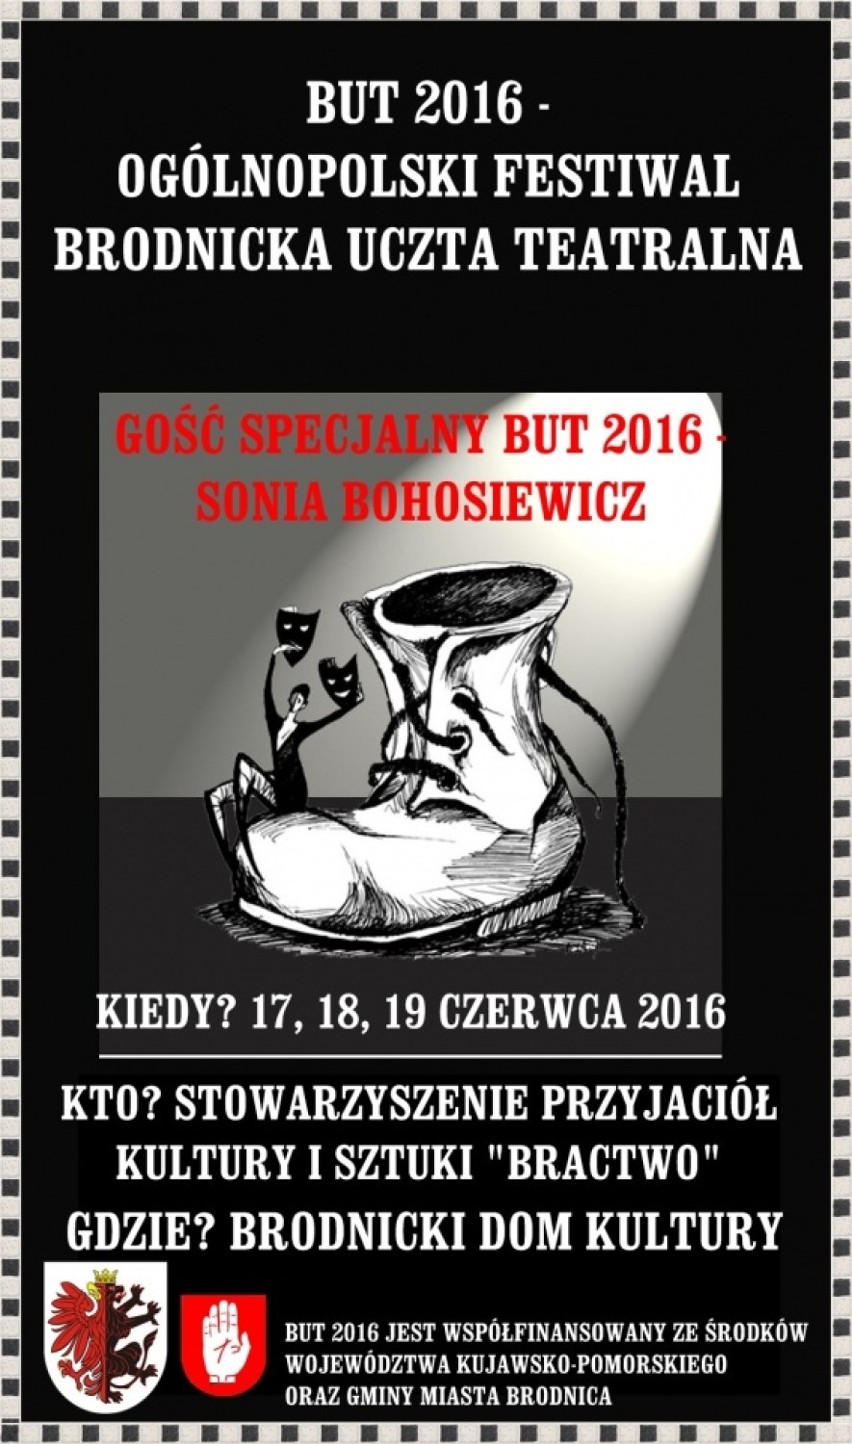 Ogólnopolski Festiwal Brodnicka Uczta Teatralna BUT 2016. Gościem Sonia Bohosiewicz. Wykaz imprez